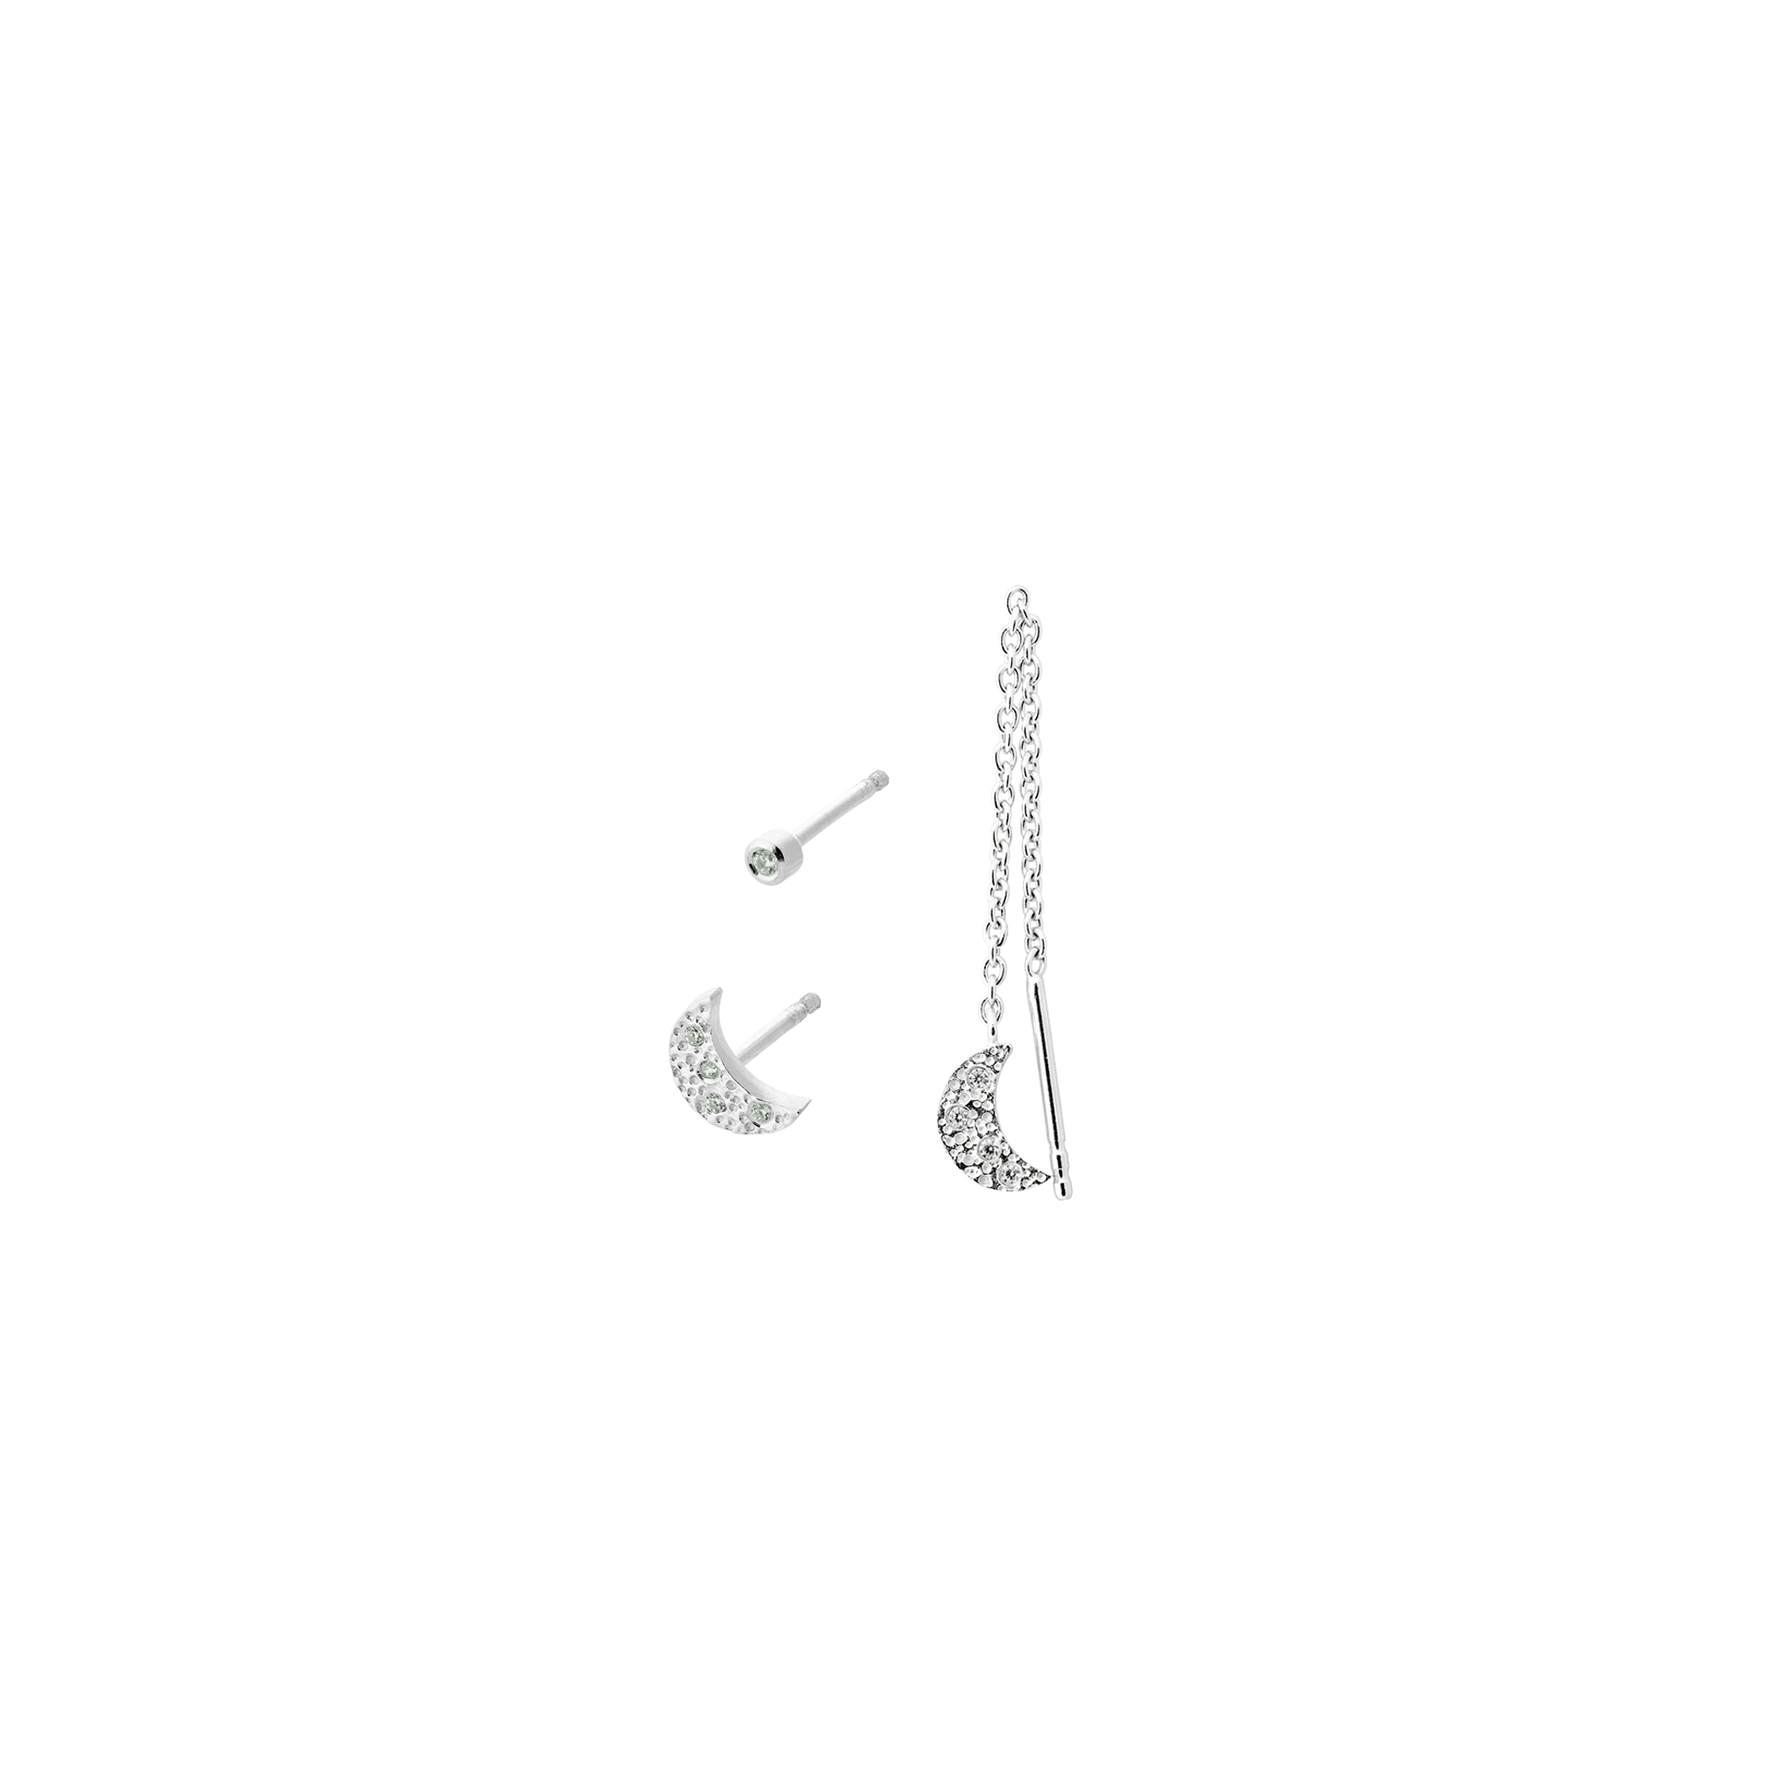 Moonlight Earring Box fra Pernille Corydon i Sølv Sterling 925|Zircons|Blank